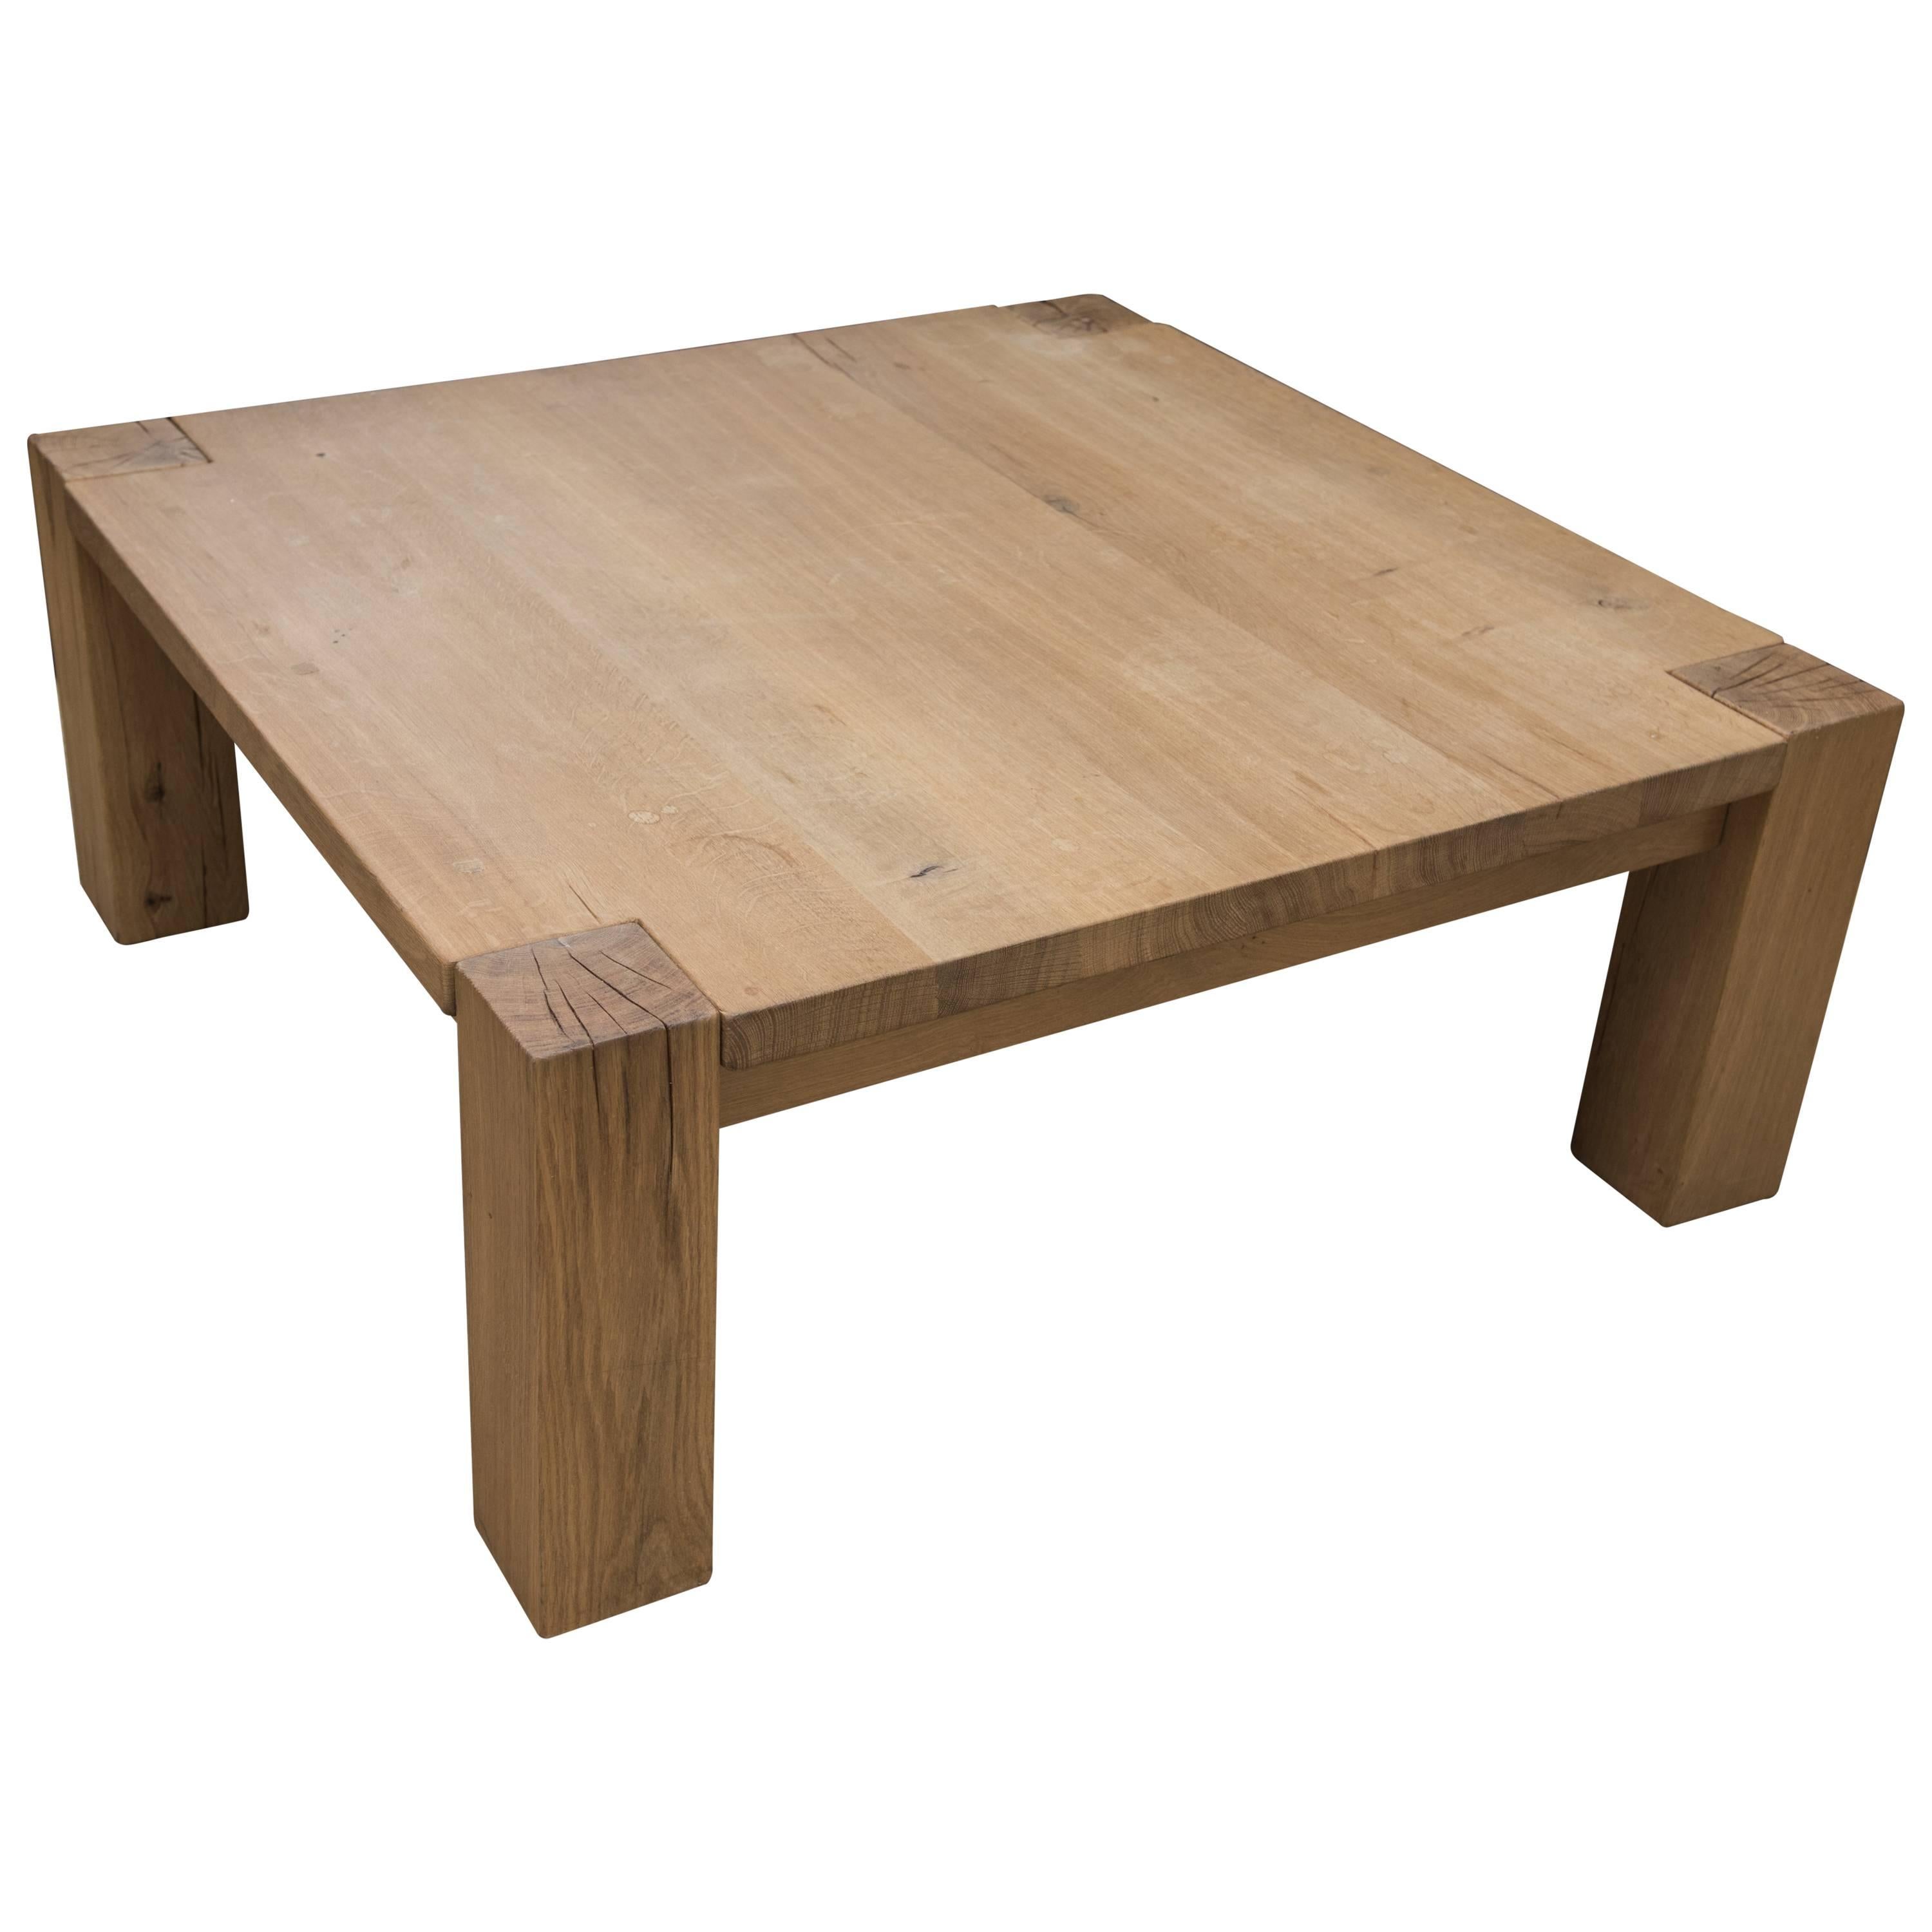 Oak Coffee Table For Sale